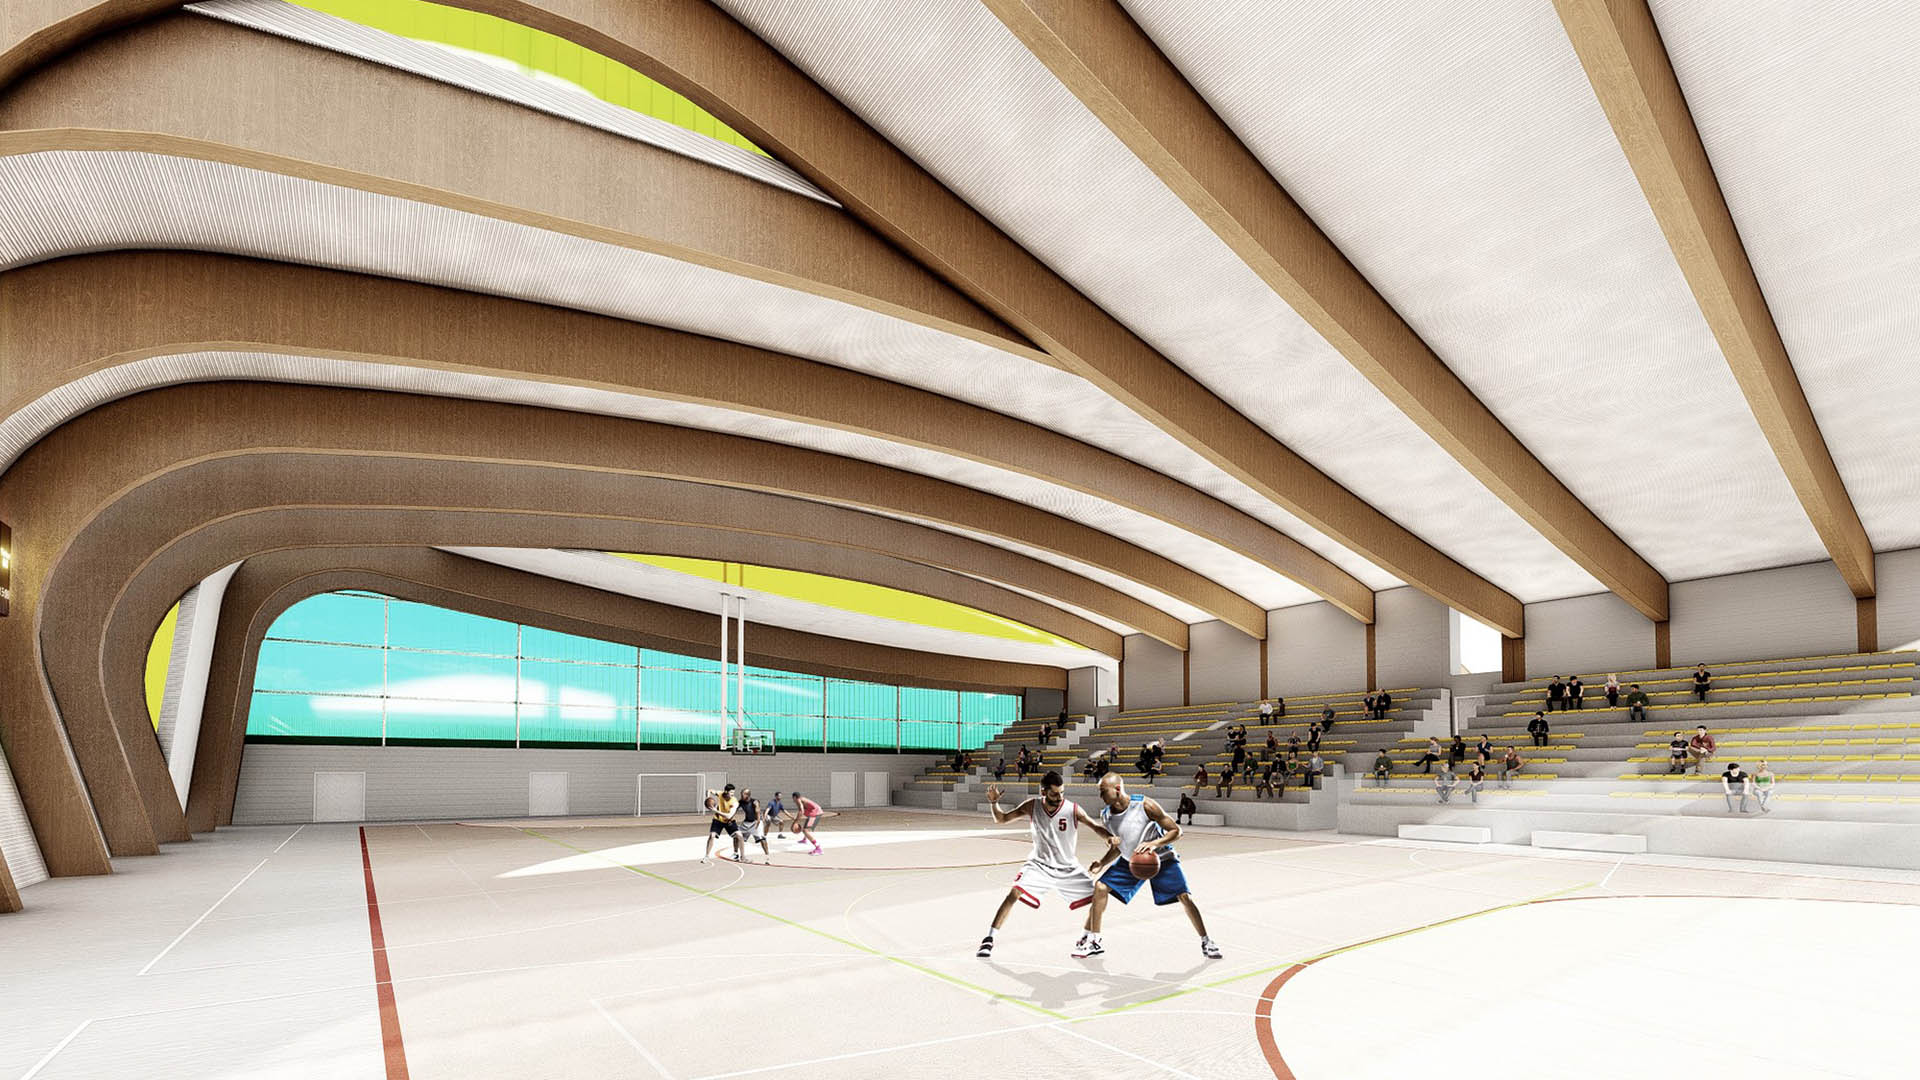 Sale a concurso por casi 5,7 millones de euros la obra del nuevo pabellón polideportivo de San Pedro Alcántara